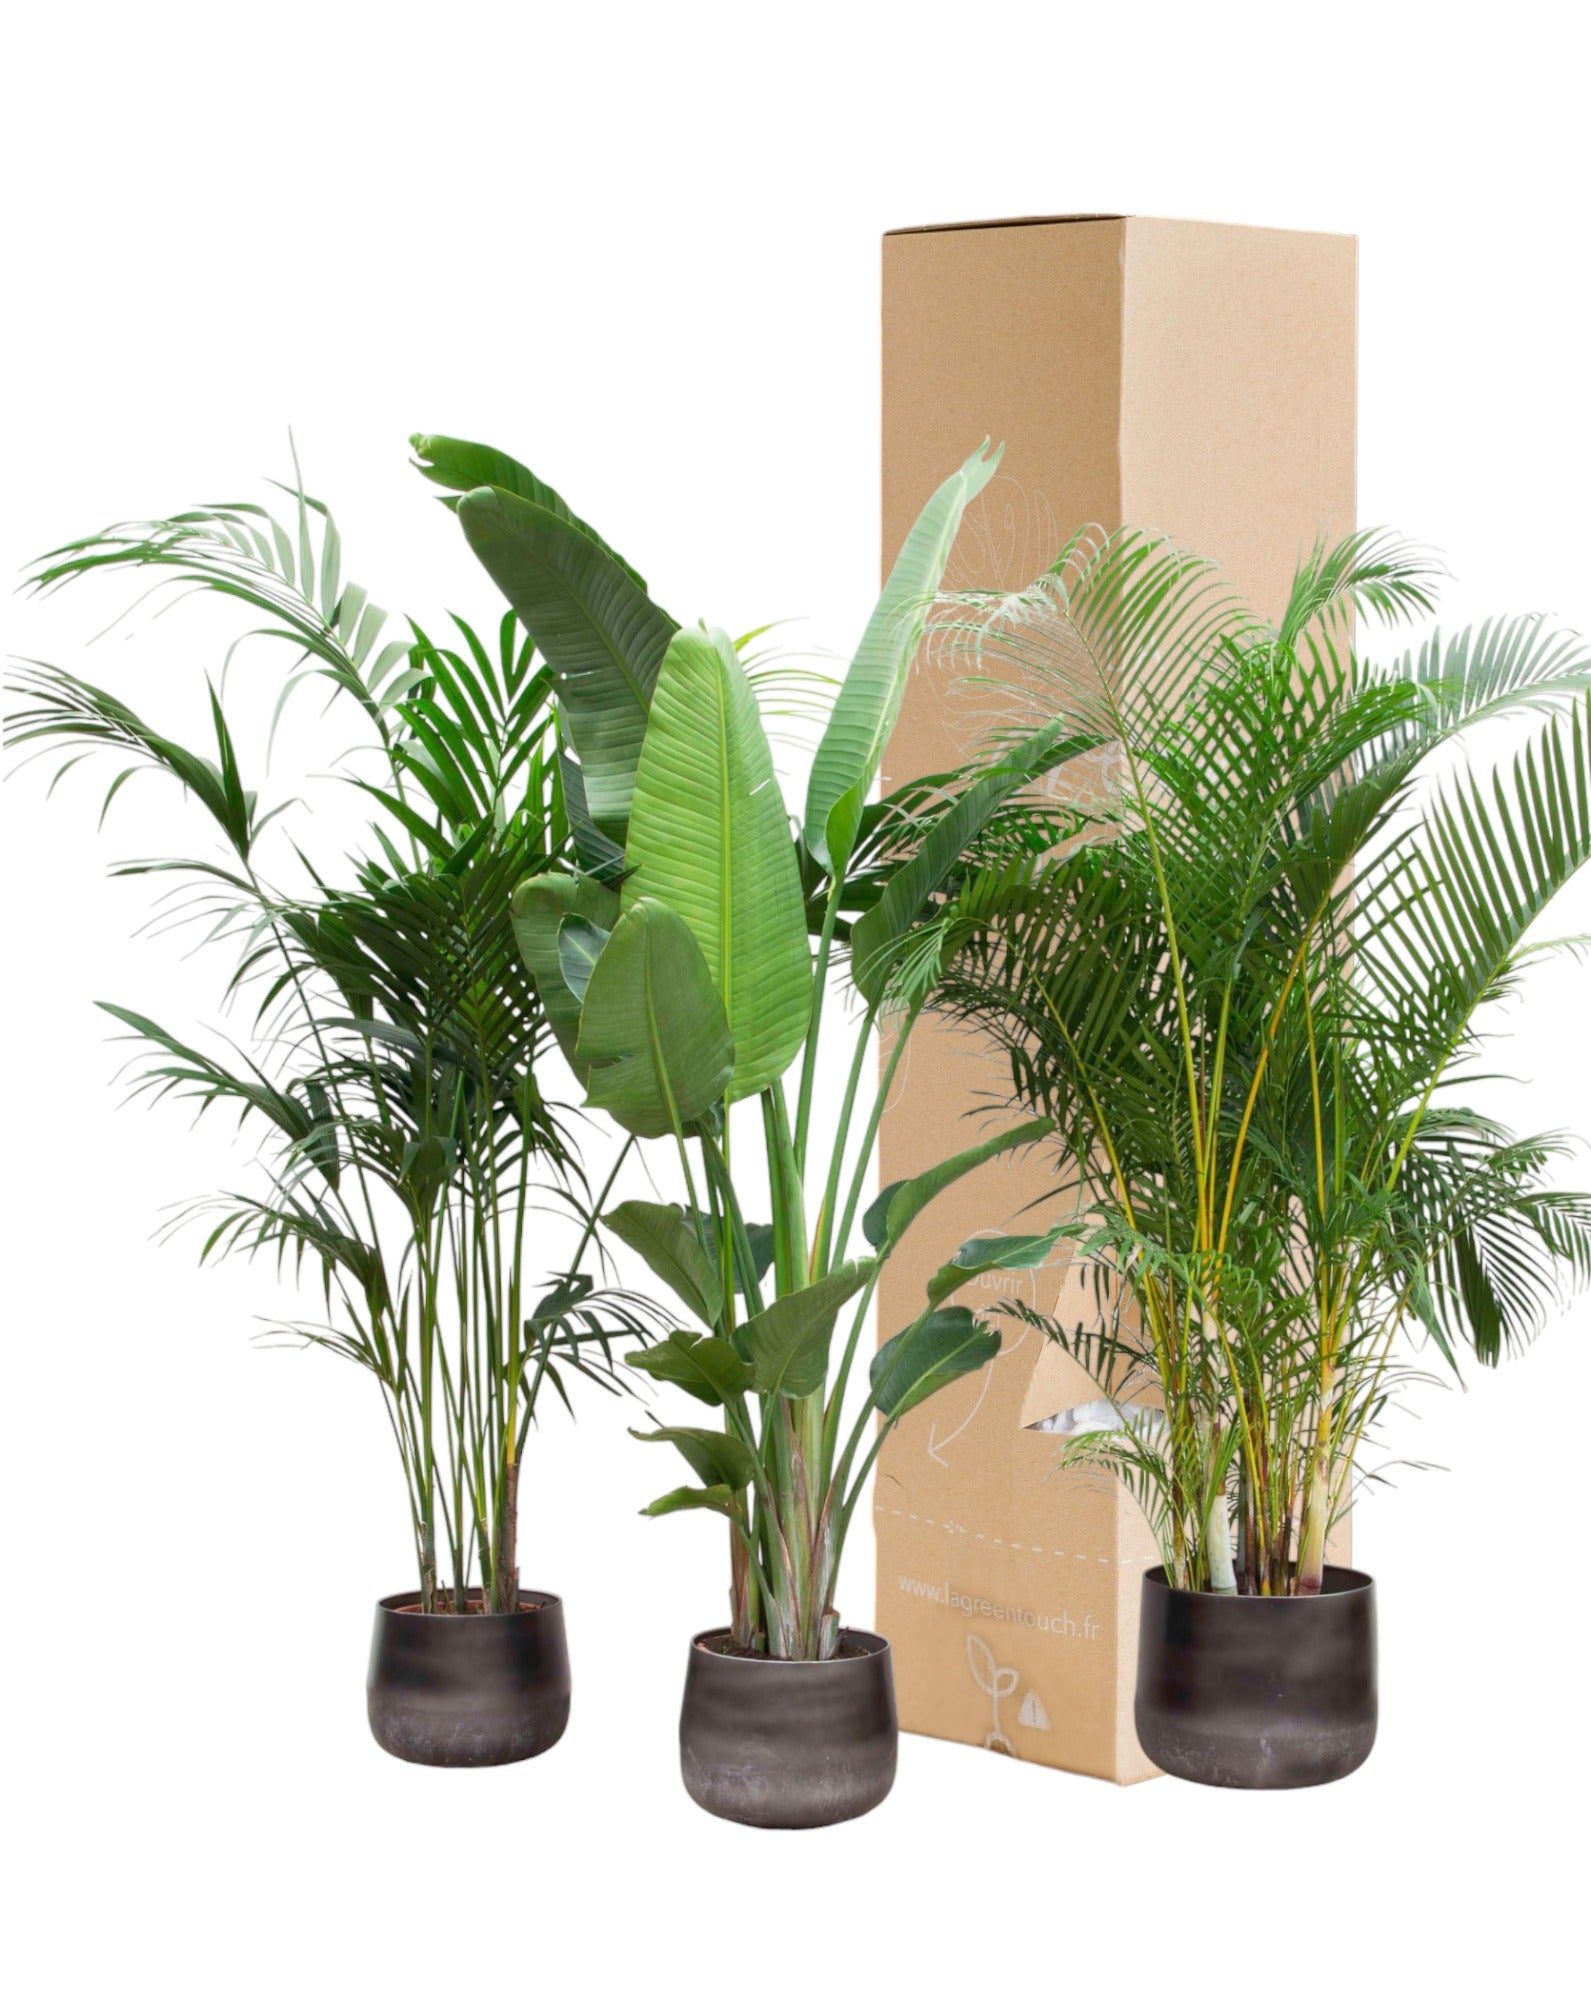 Plante d'intérieur - palmier kentia, strelitzia augusta, palmier areca - lot de 3 plantes - coffret cadeau 80cm